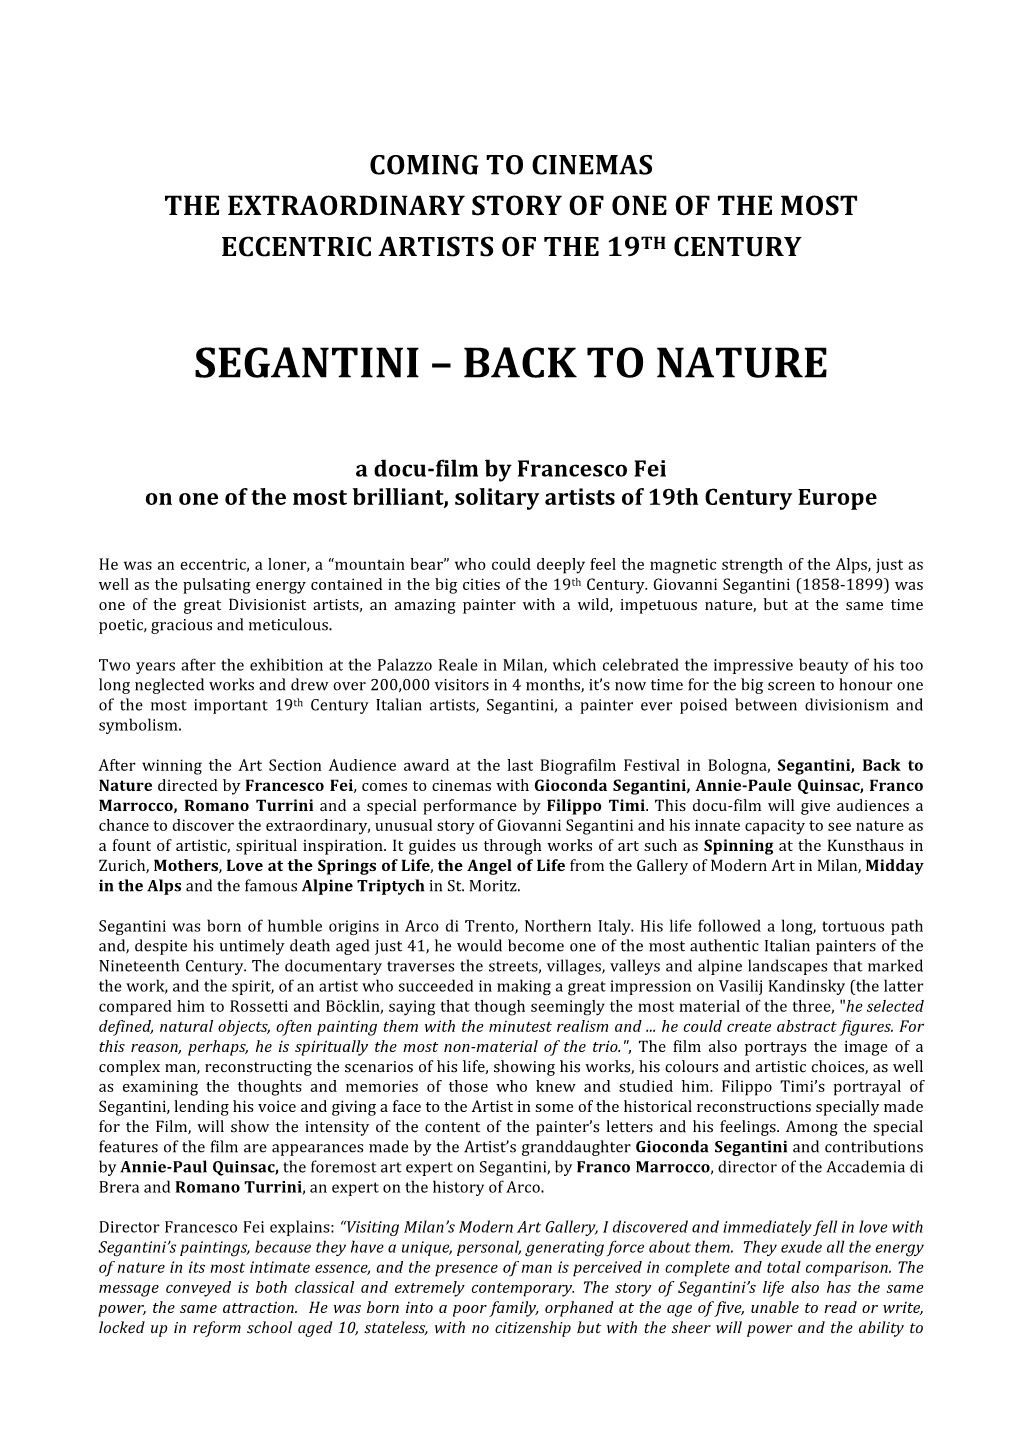 Segantini – Back to Nature